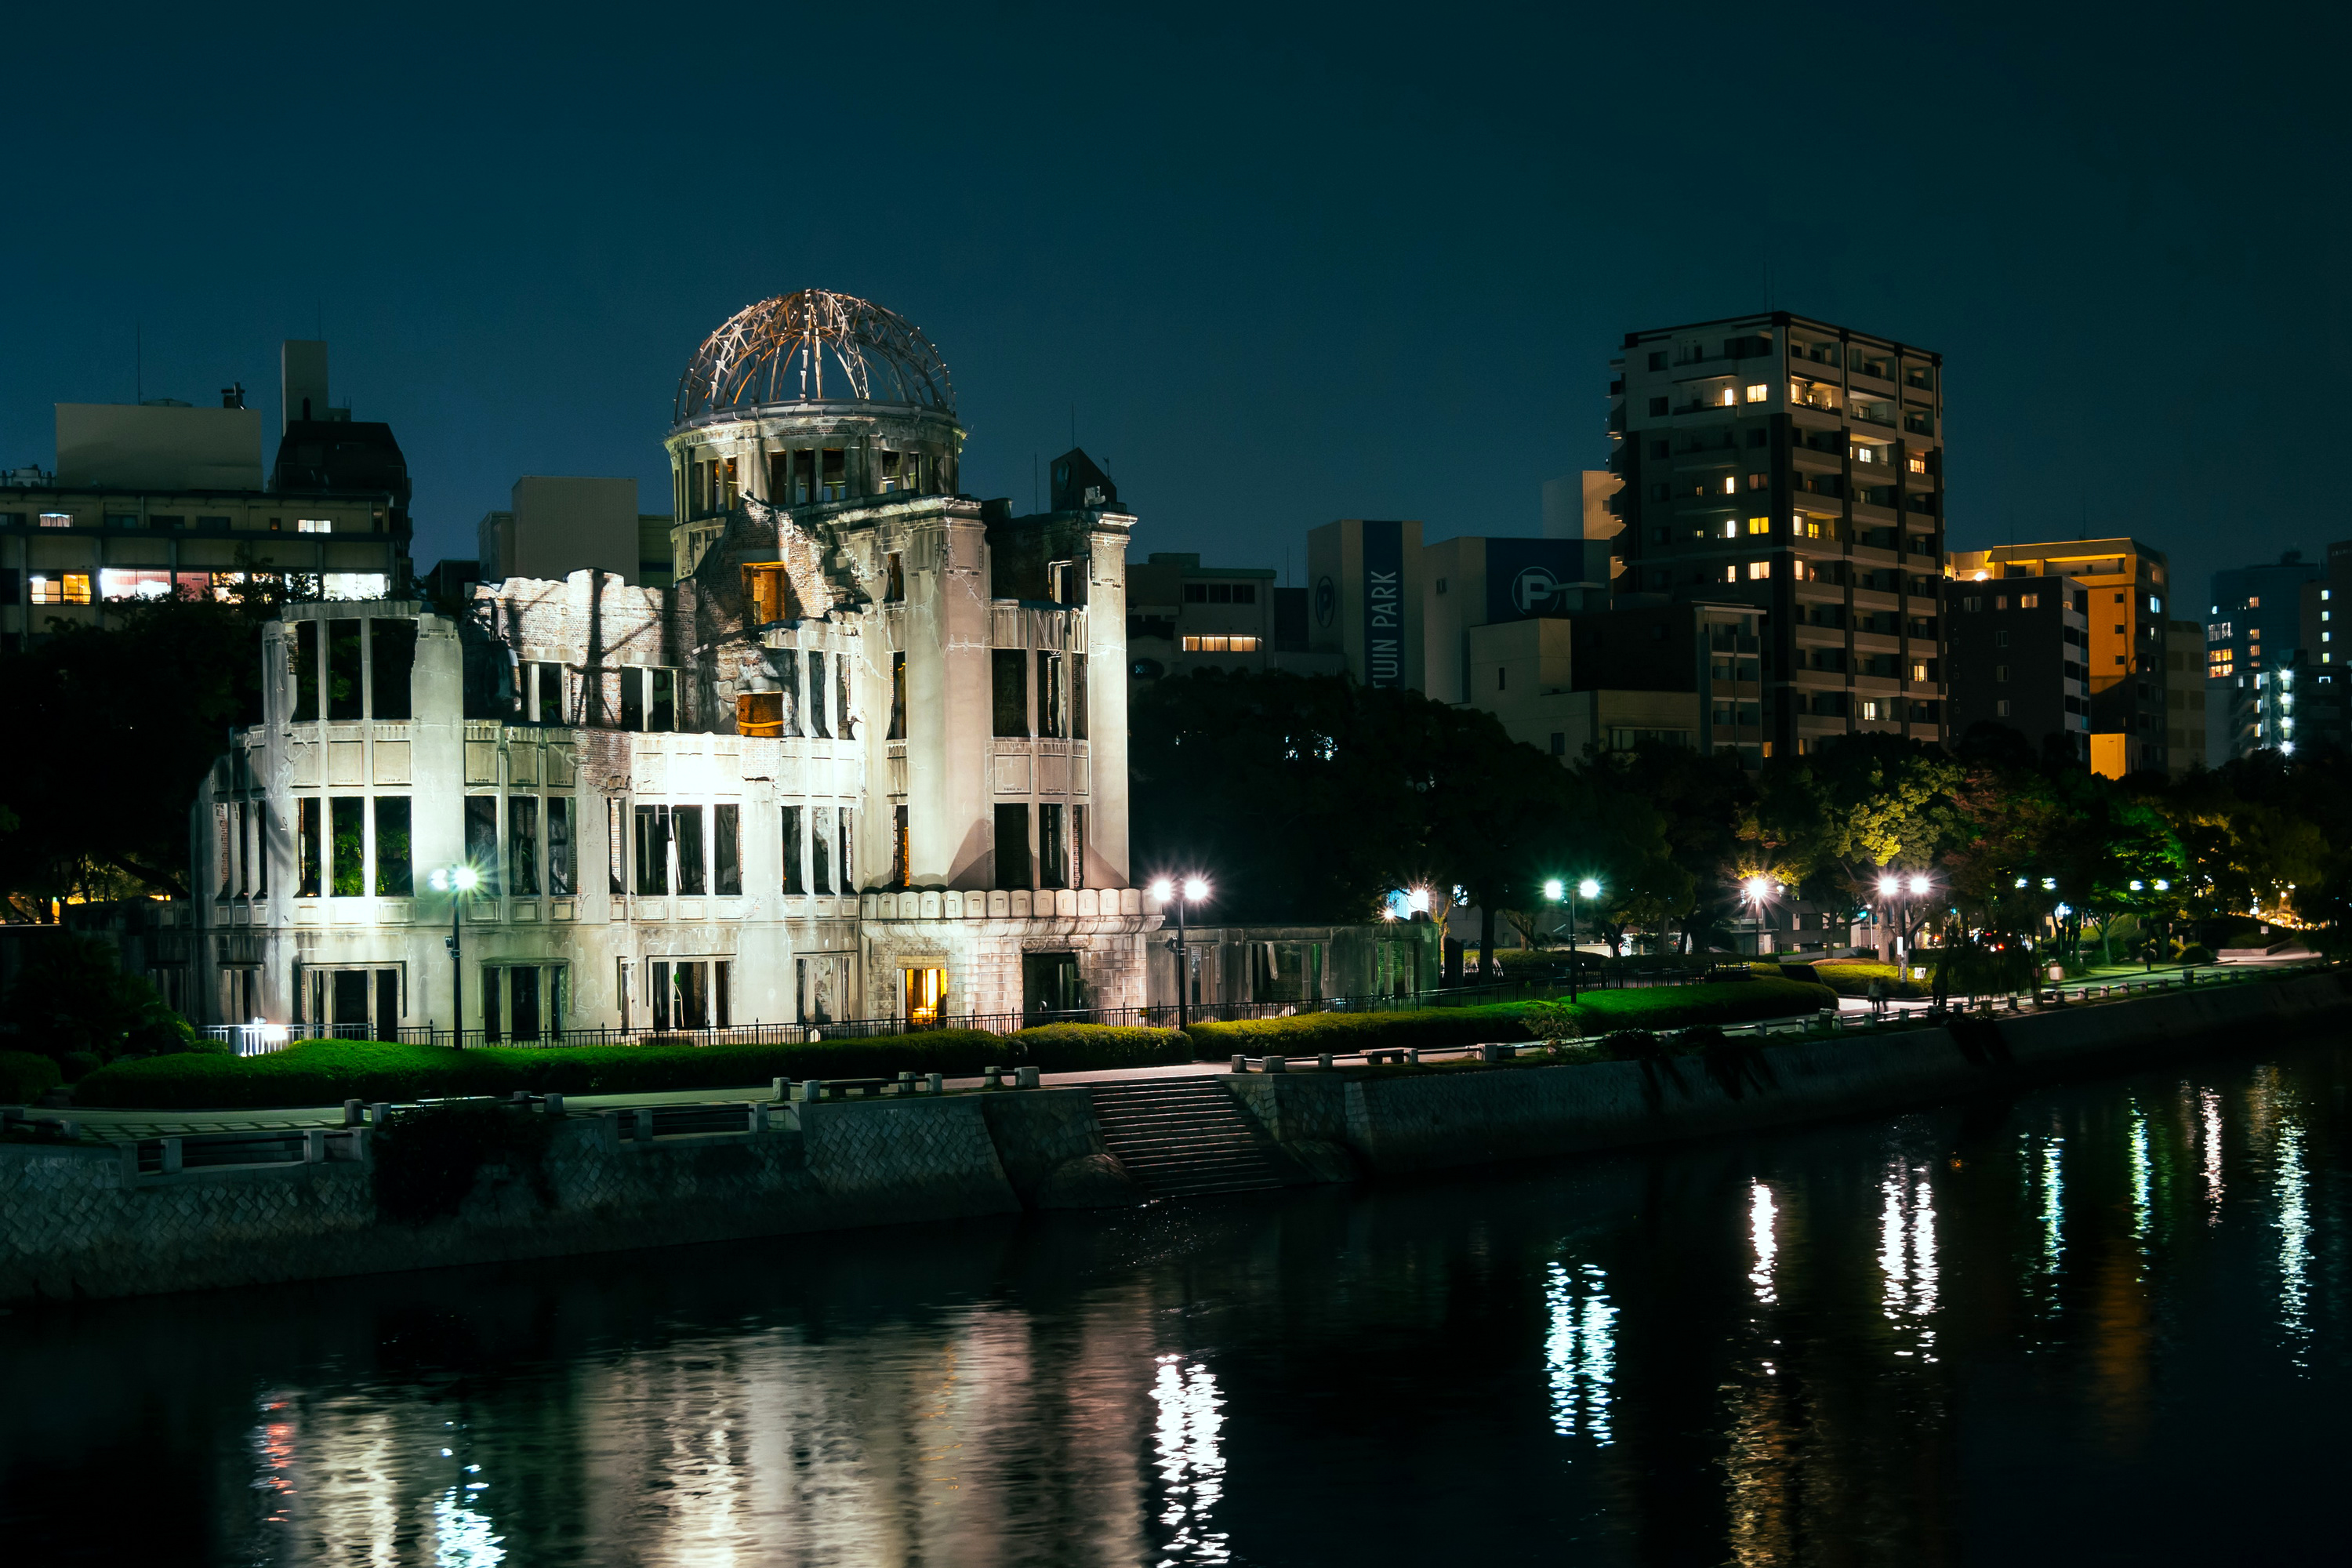 Картинка Япония Hiroshima Peace Memorial (Genbaku Dome) река Ночные Здания Города Ночь Реки речка ночью в ночи Дома город